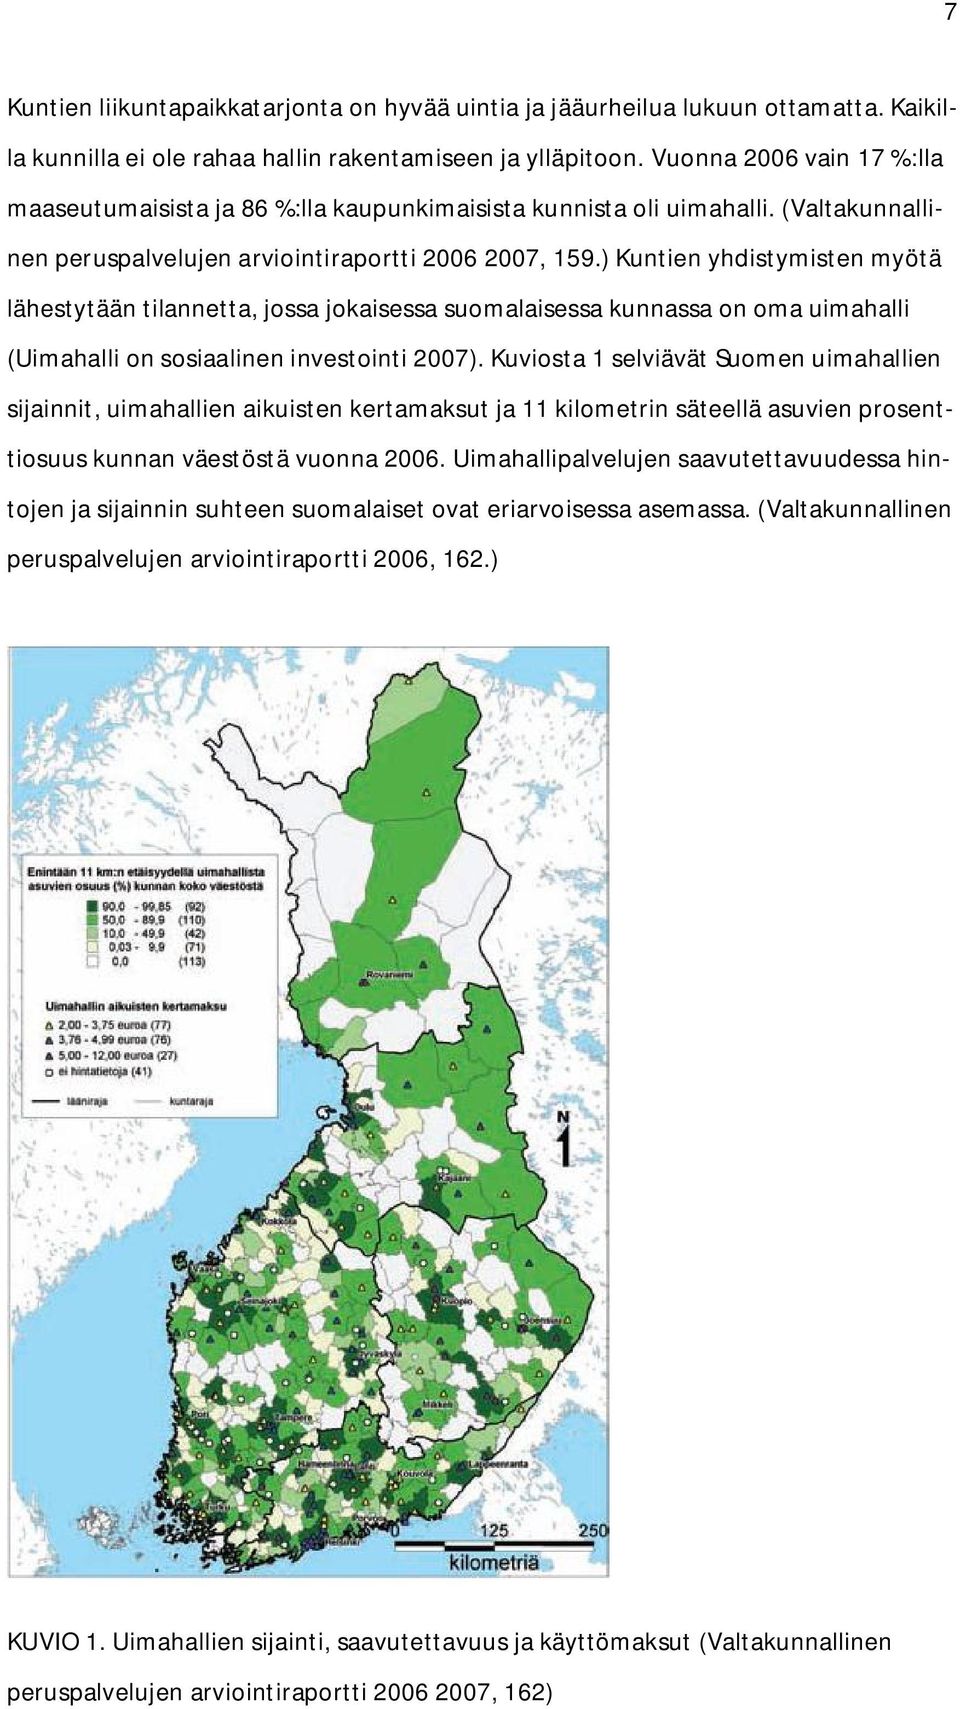 ) Kuntien yhdistymisten myötä lähestytään tilannetta, jossa jokaisessa suomalaisessa kunnassa on oma uimahalli (Uimahalli on sosiaalinen investointi 2007).